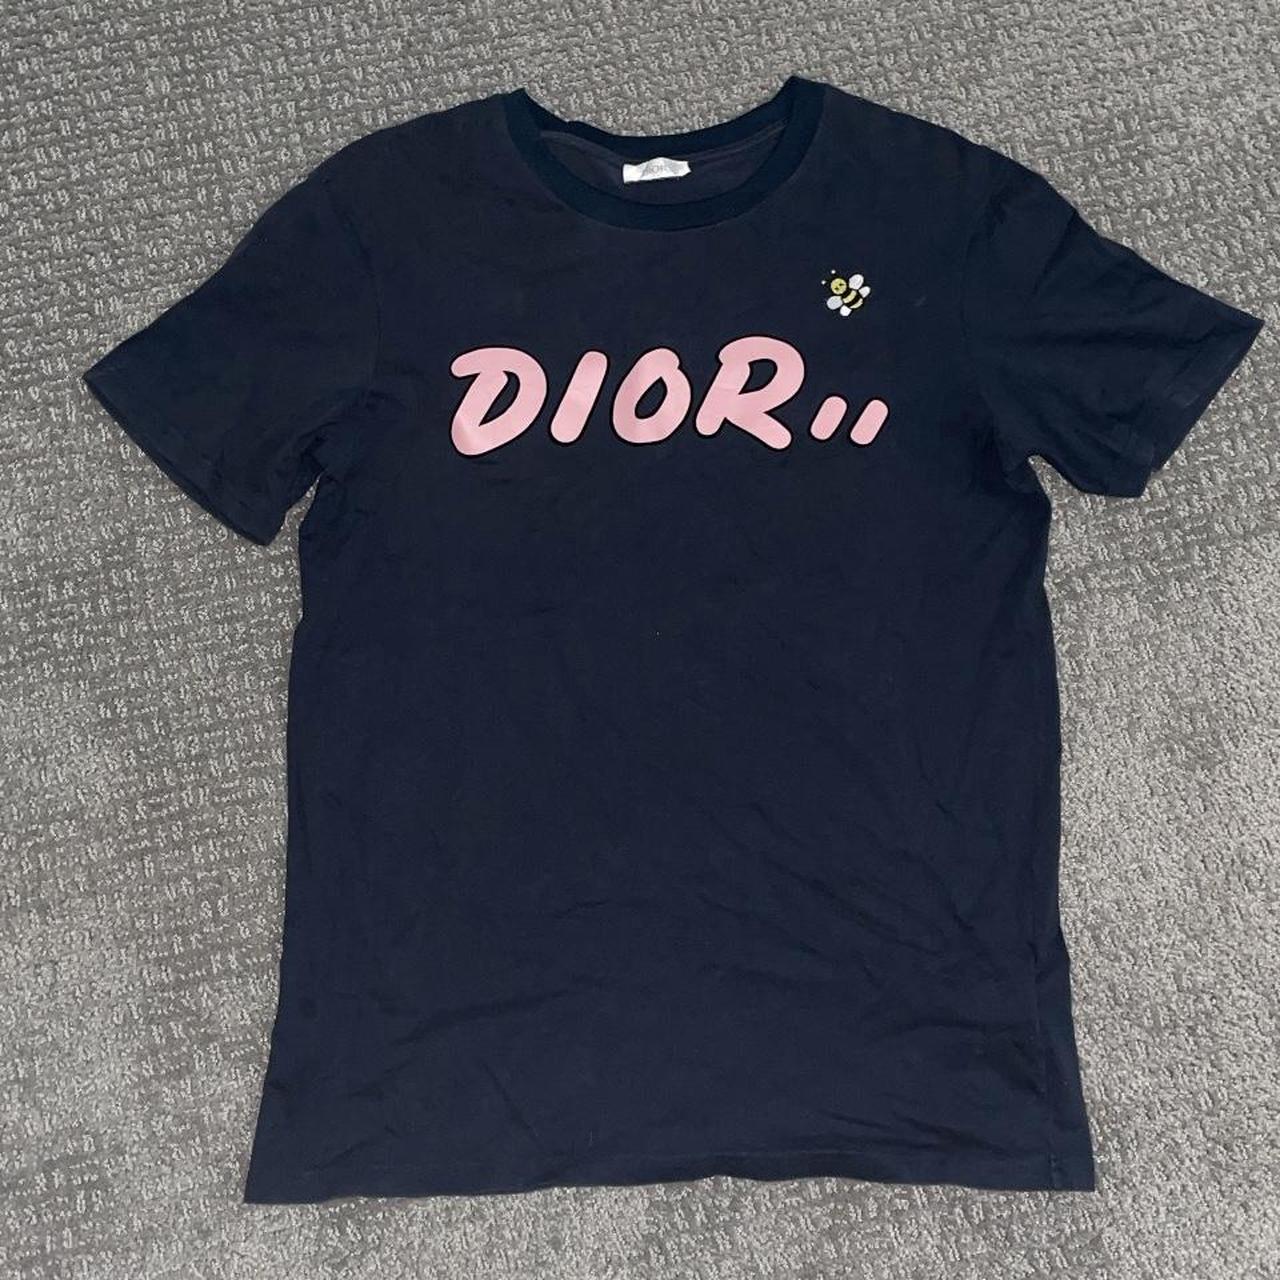 Dior Kaws T Shirt Important to look at... - Depop